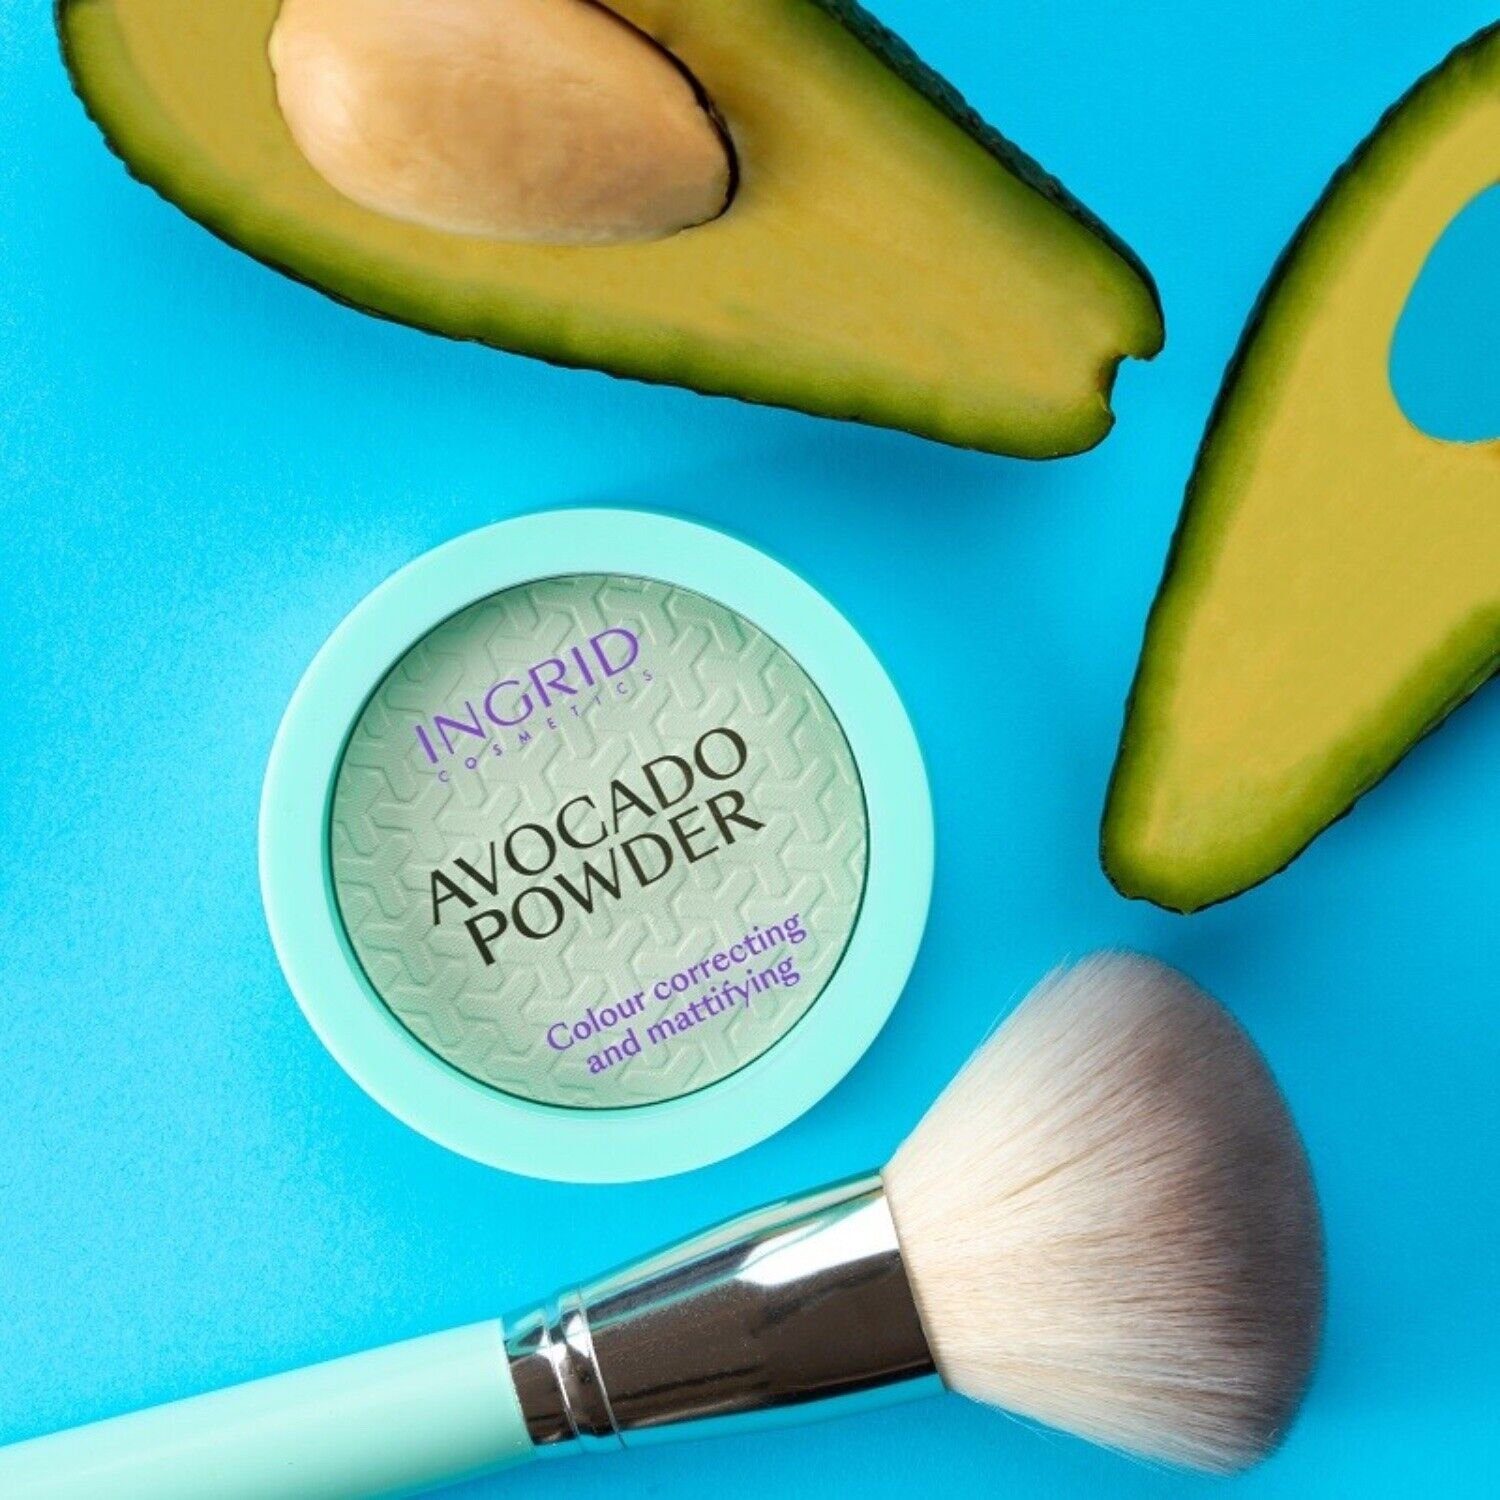 Vollarè Cosmetics Puder Powder mit Mattierender leichte Avocado Puder und natürliche Textur Deckkraft